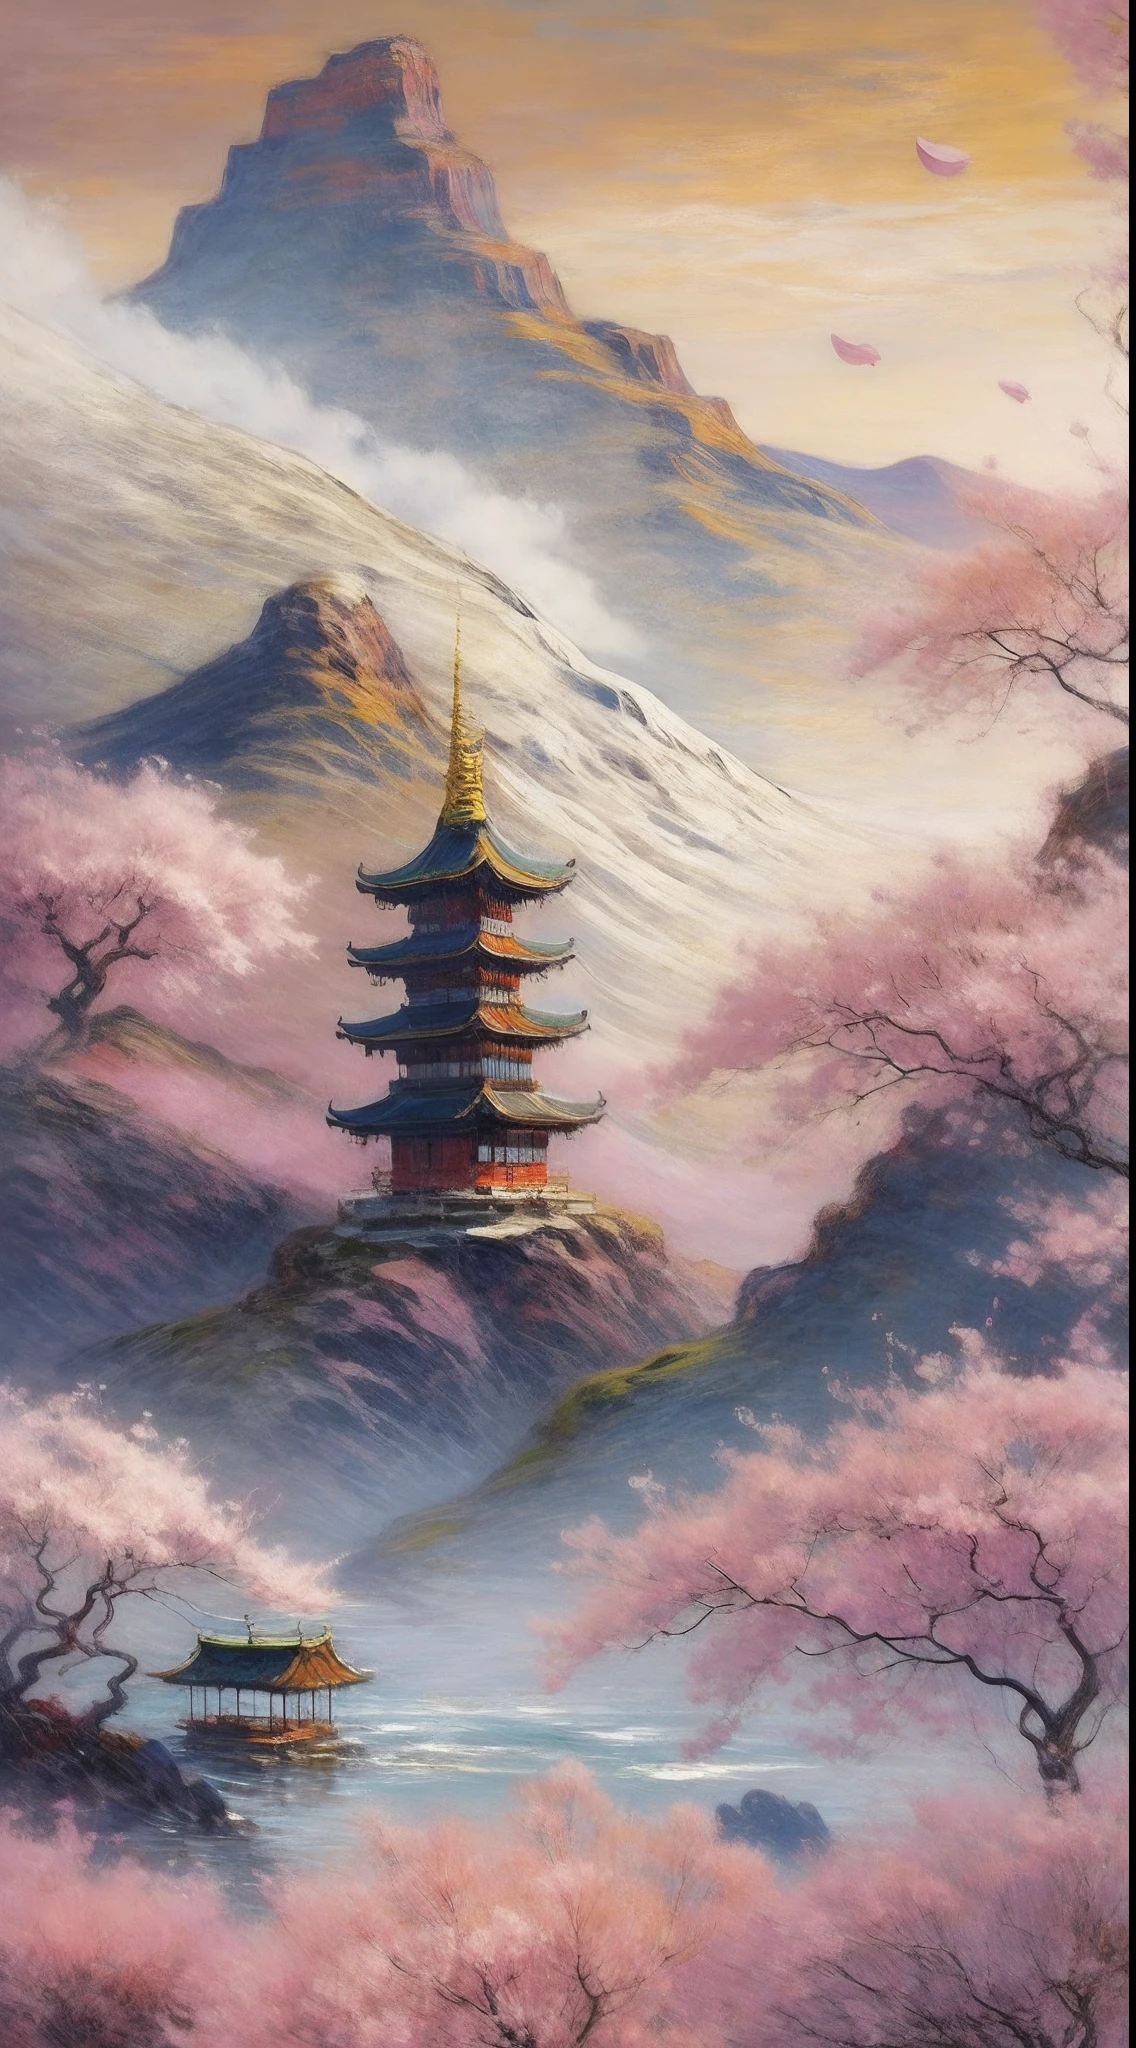 日の出の穏やかな山の風景, 頂上に建つ孤独な寺院, 満開の桜の木々に囲まれて, 静けさと精神的な目覚めの感覚を呼び起こす, 図, デジタルアート